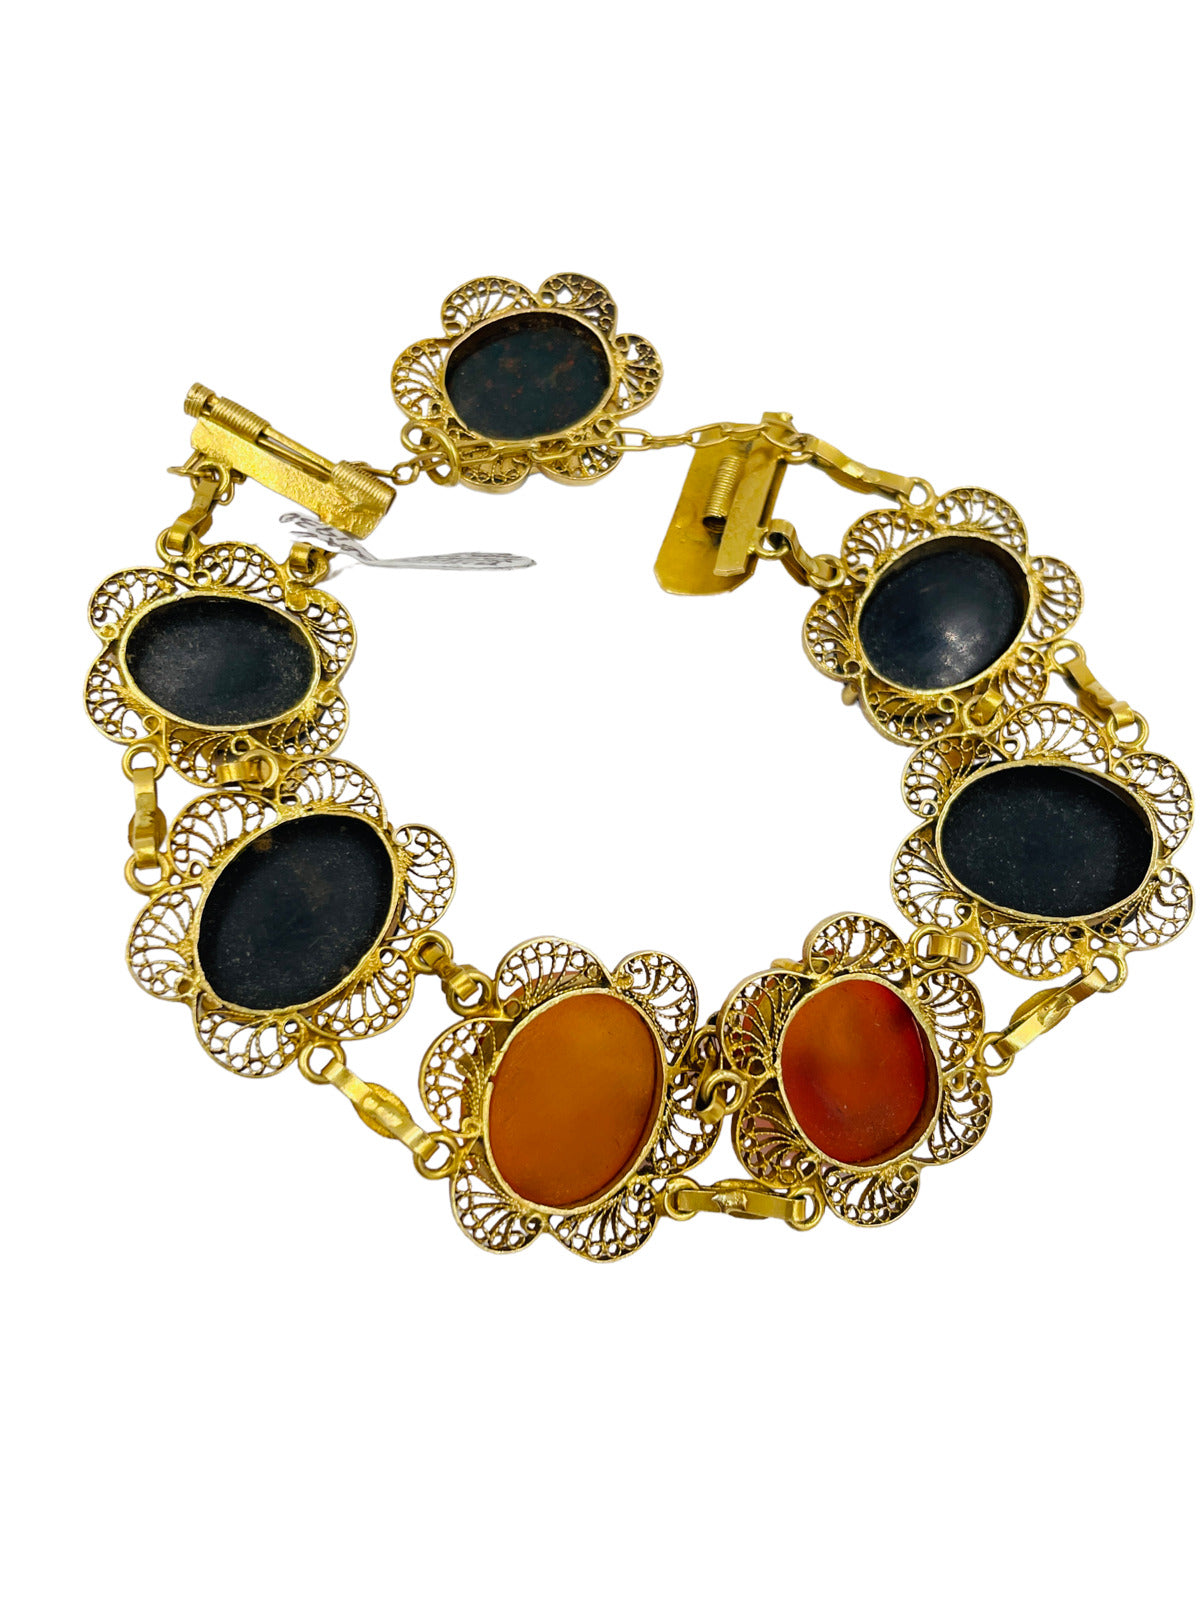 Art Deco 18k gold Intaglio filigree bracelet Bloodstone Carnelian